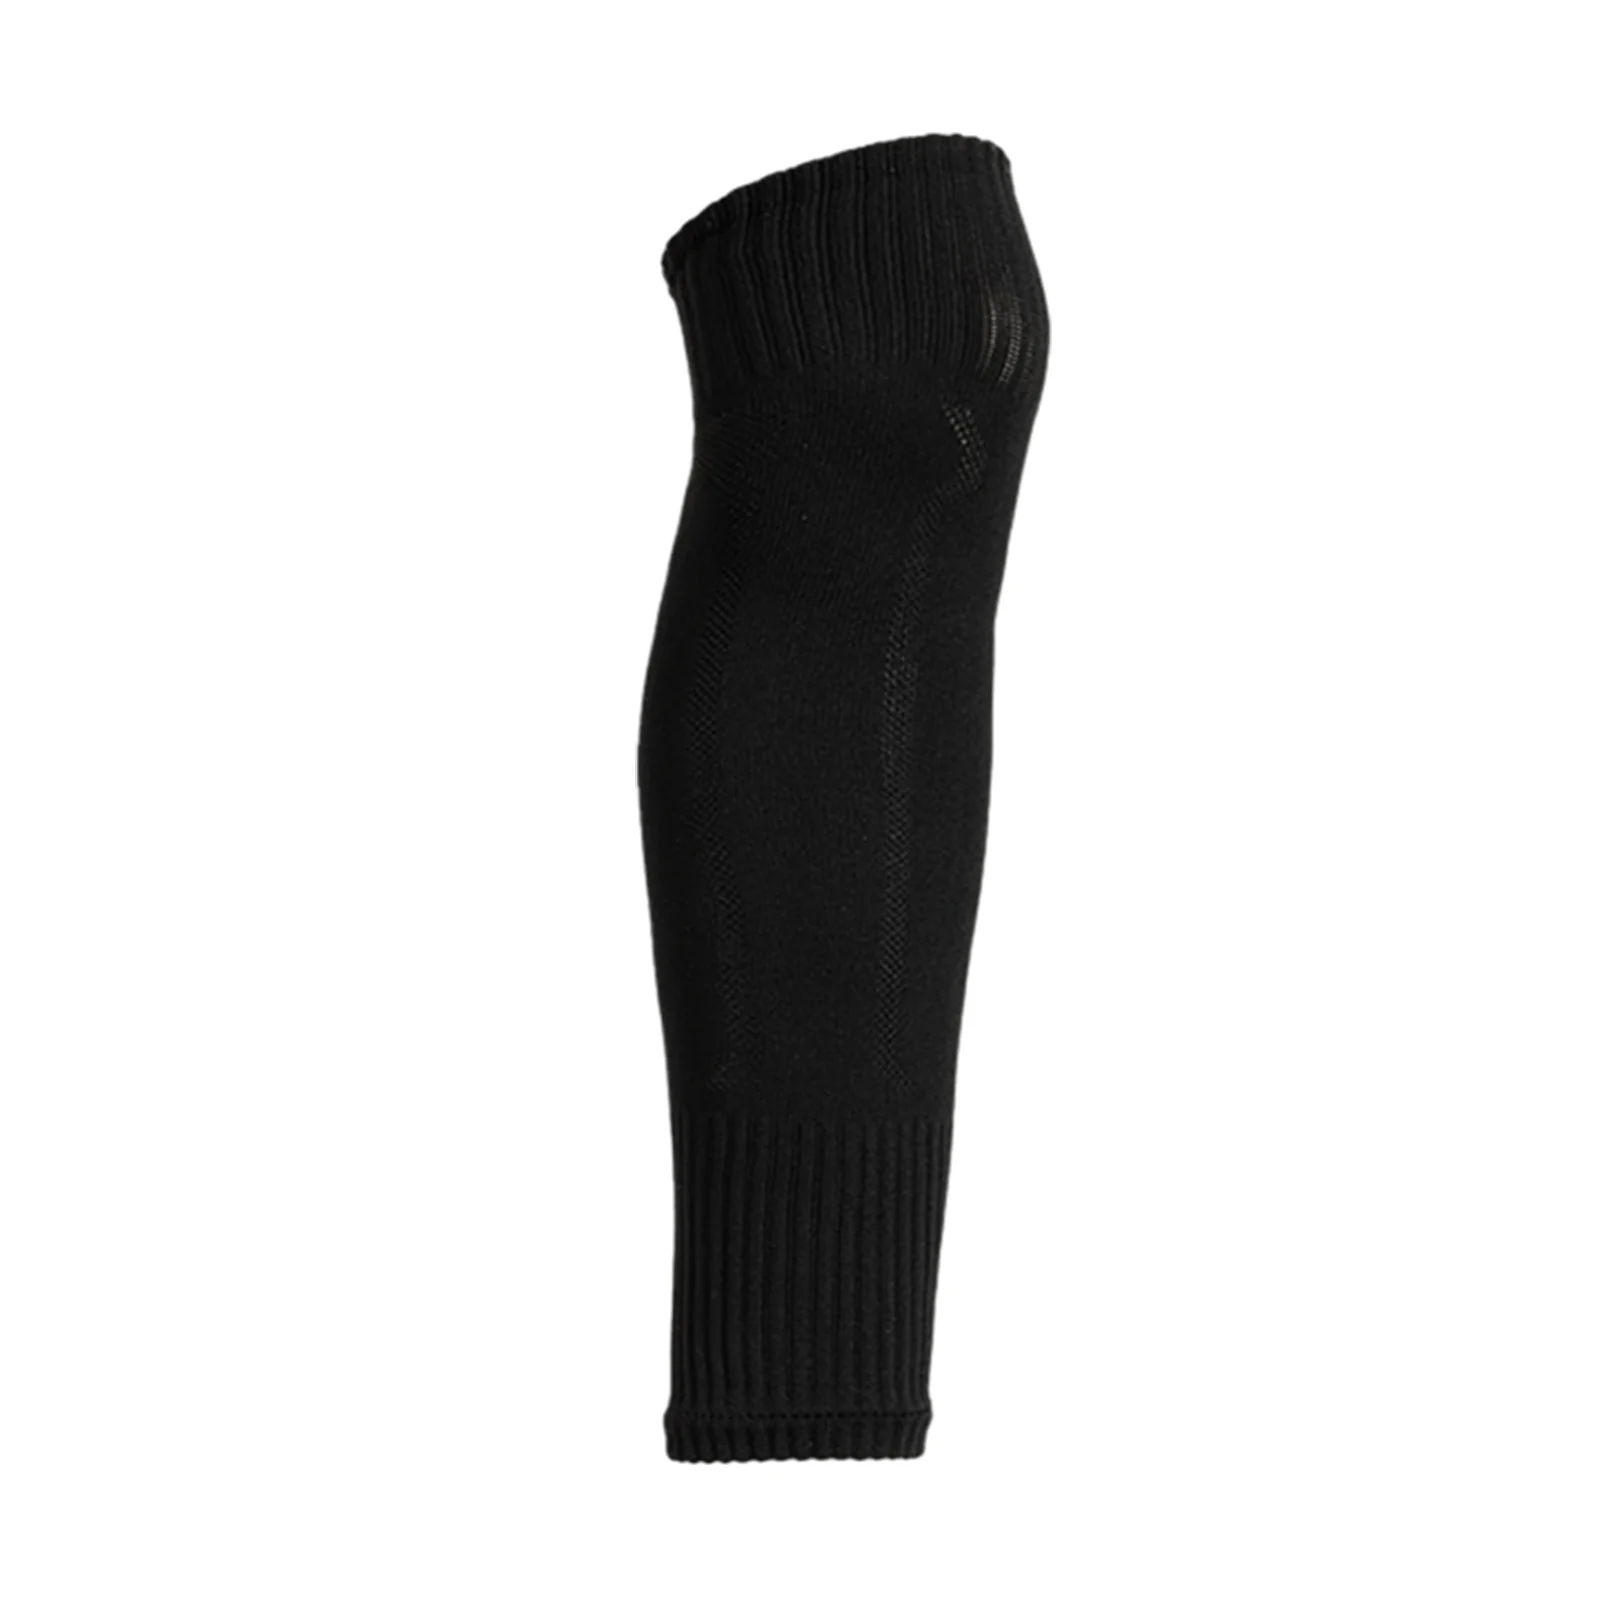 Calzini per gambe da calcio, ginocchiere sportive traspiranti traspiranti, protezione per ginocchio articolare, copertura per calzini al polpaccio